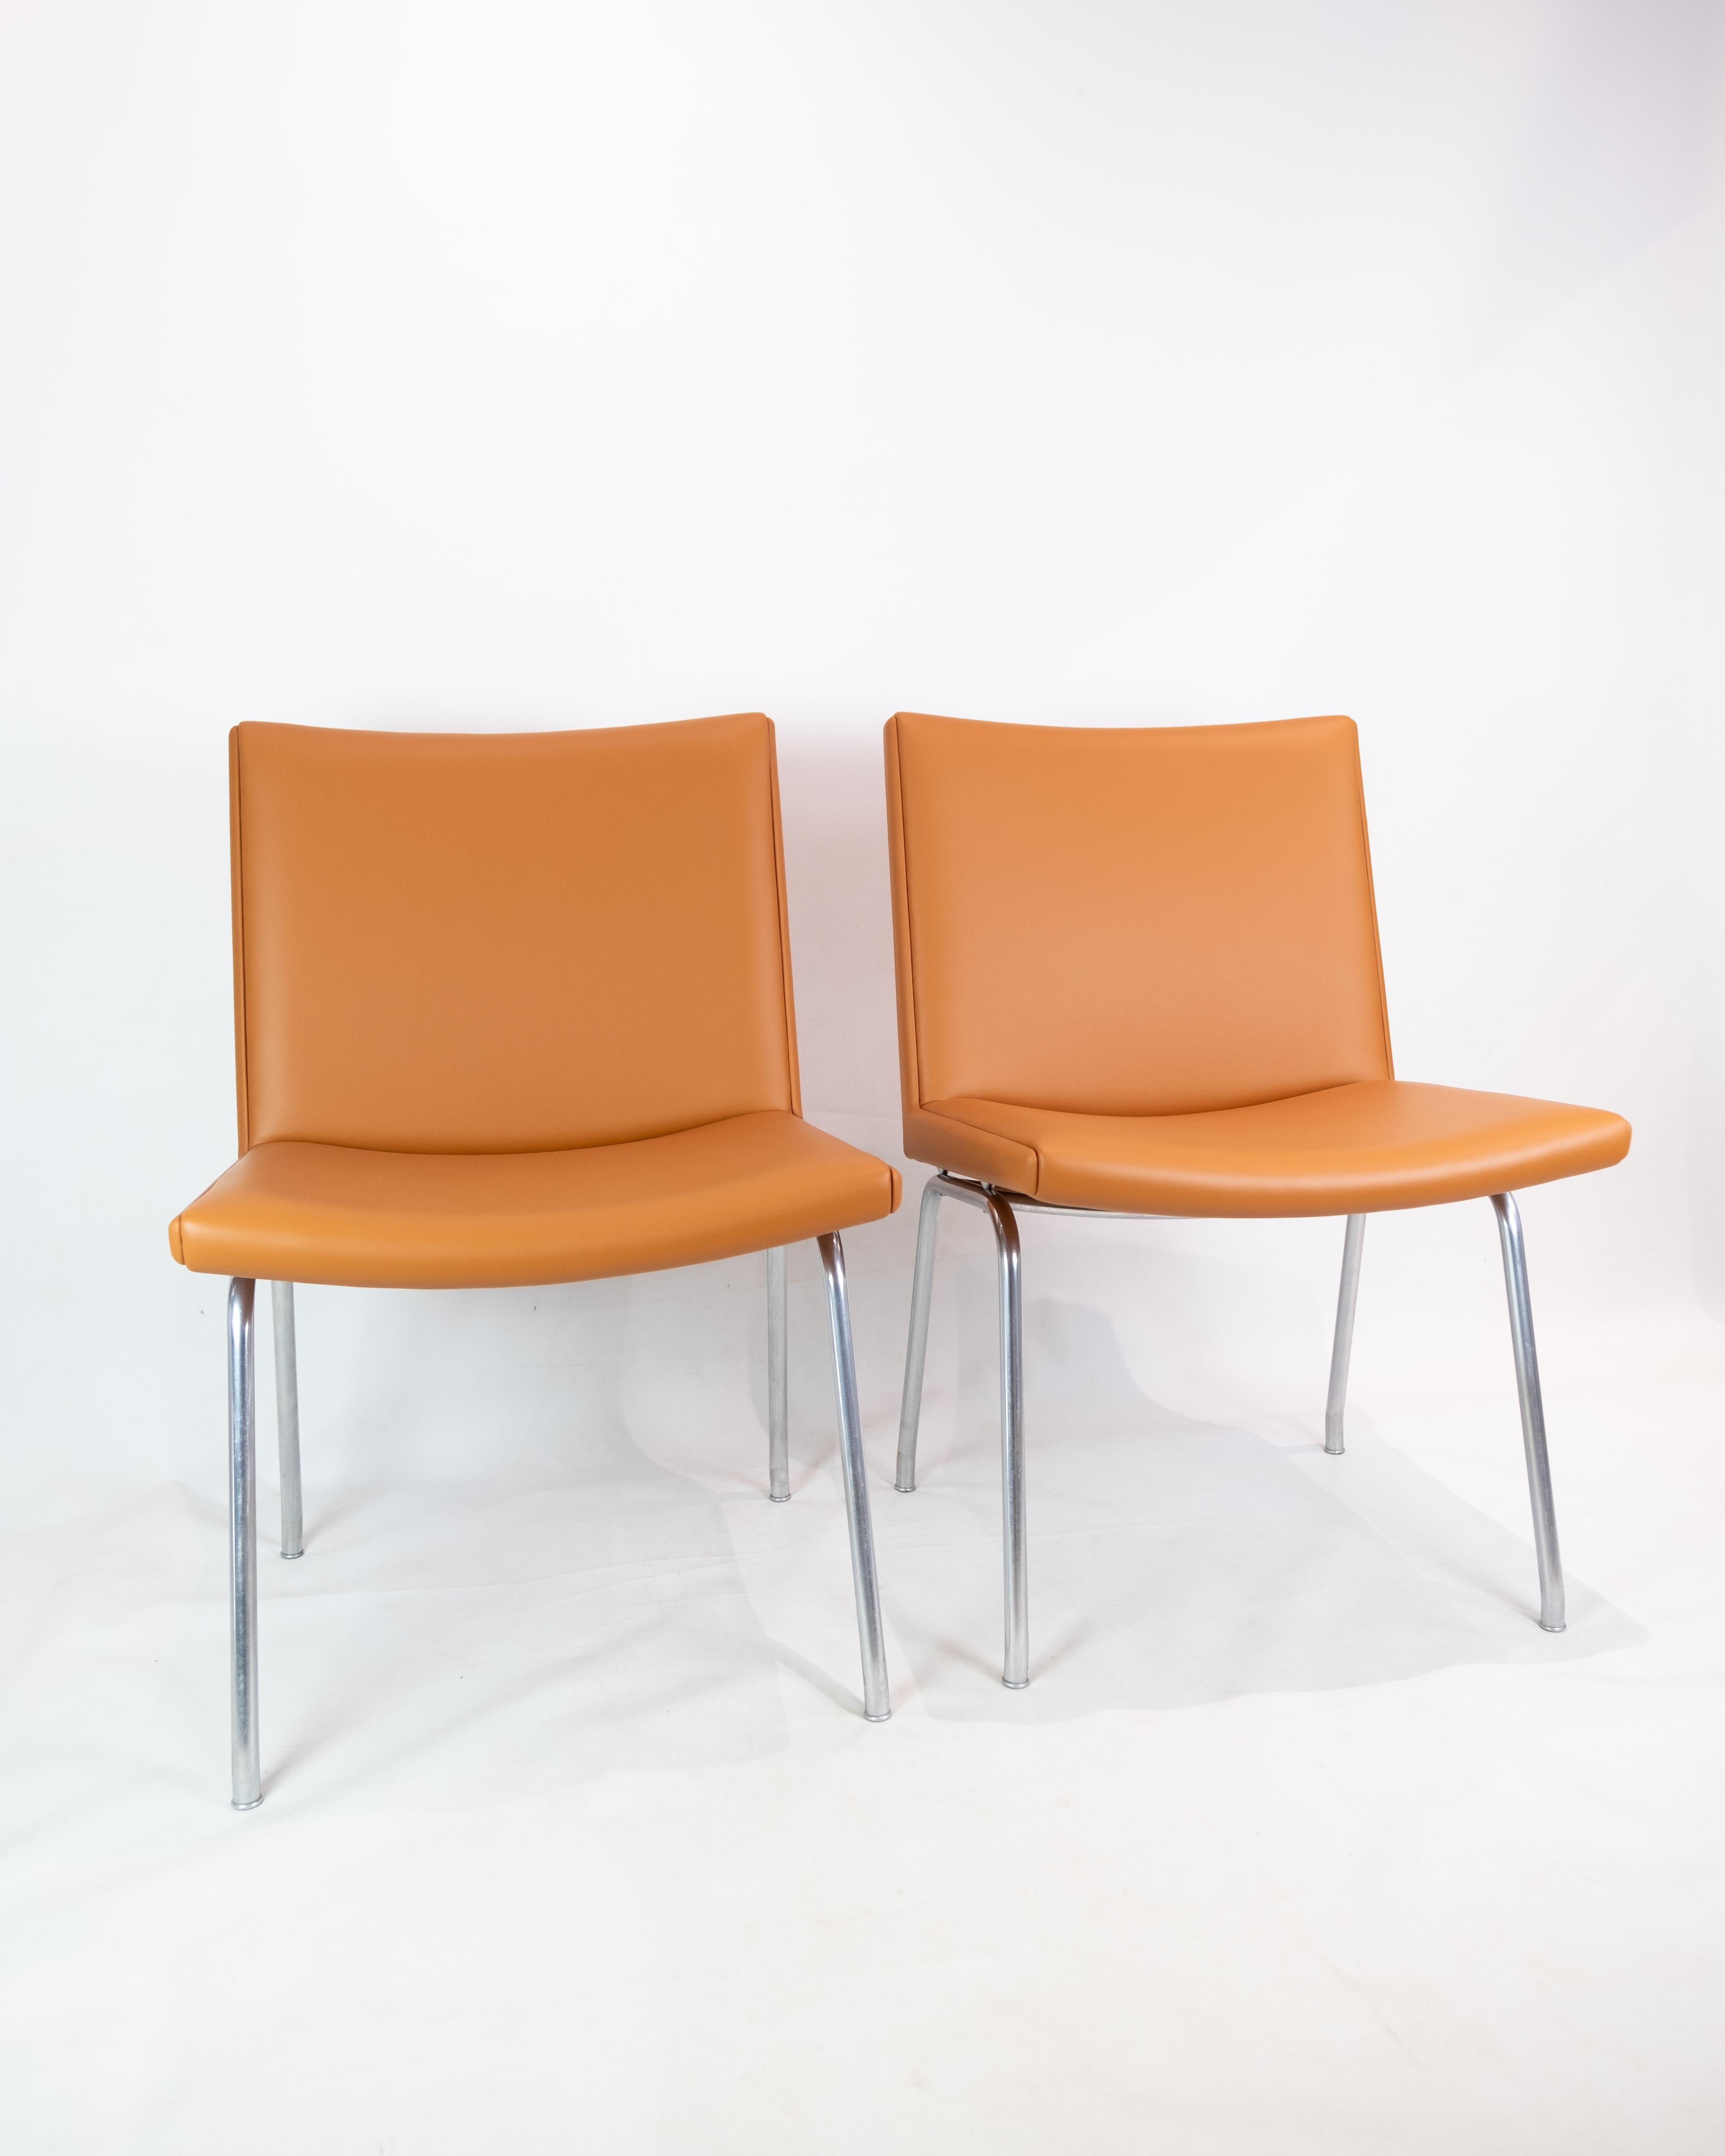 La chaise longue AP40, conçue par Hans J. Wegner en 1958, est un élément remarquable de la série minimaliste Kastrup, qui est encore utilisée aujourd'hui dans l'intérieur accueillant de l'aéroport de Copenhague.

Le design de la chaise longue AP40